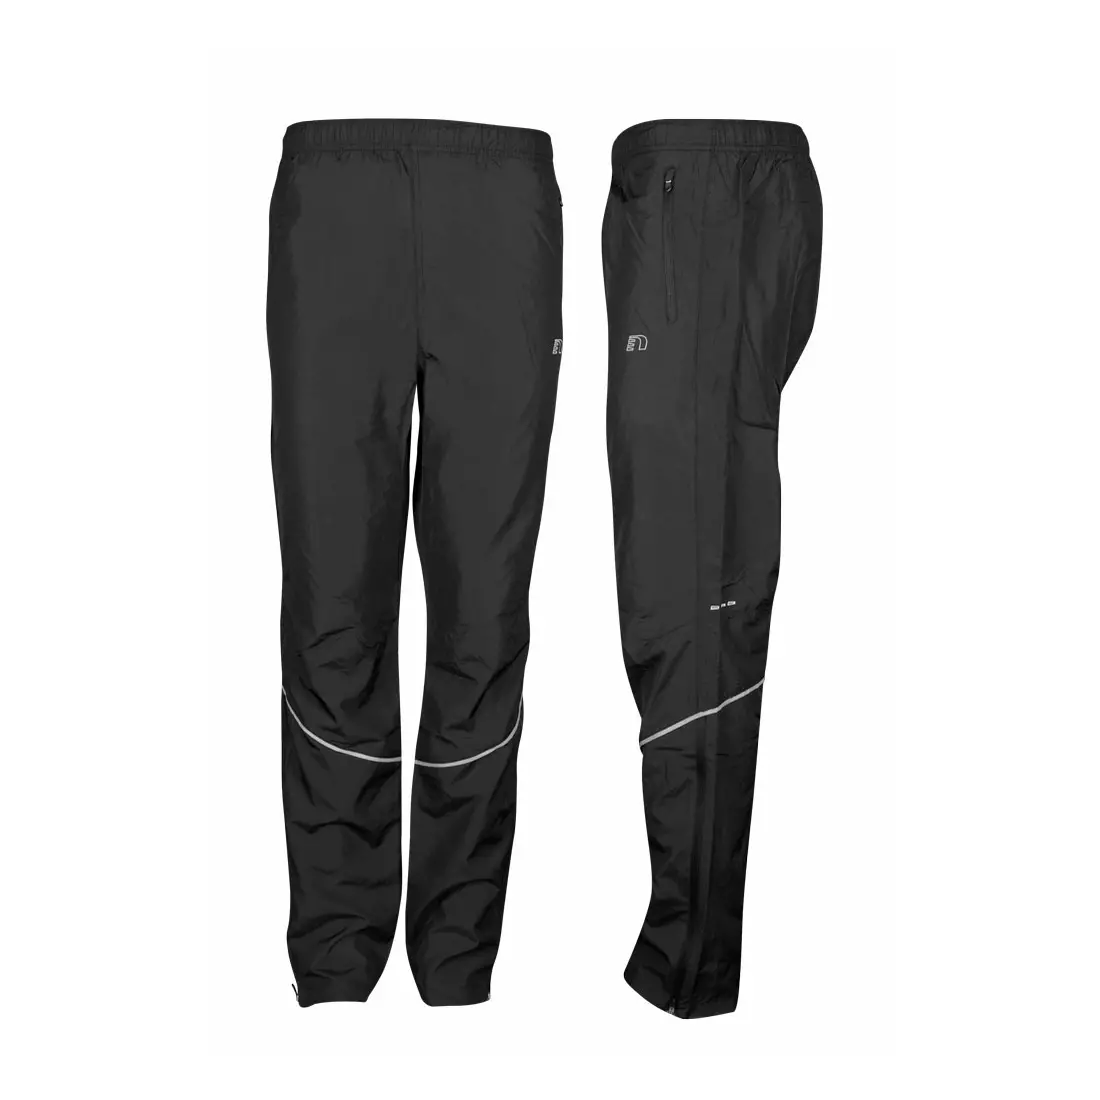 NEWLINE BASE PANTS - lehké pánské běžecké kalhoty - 14282-060